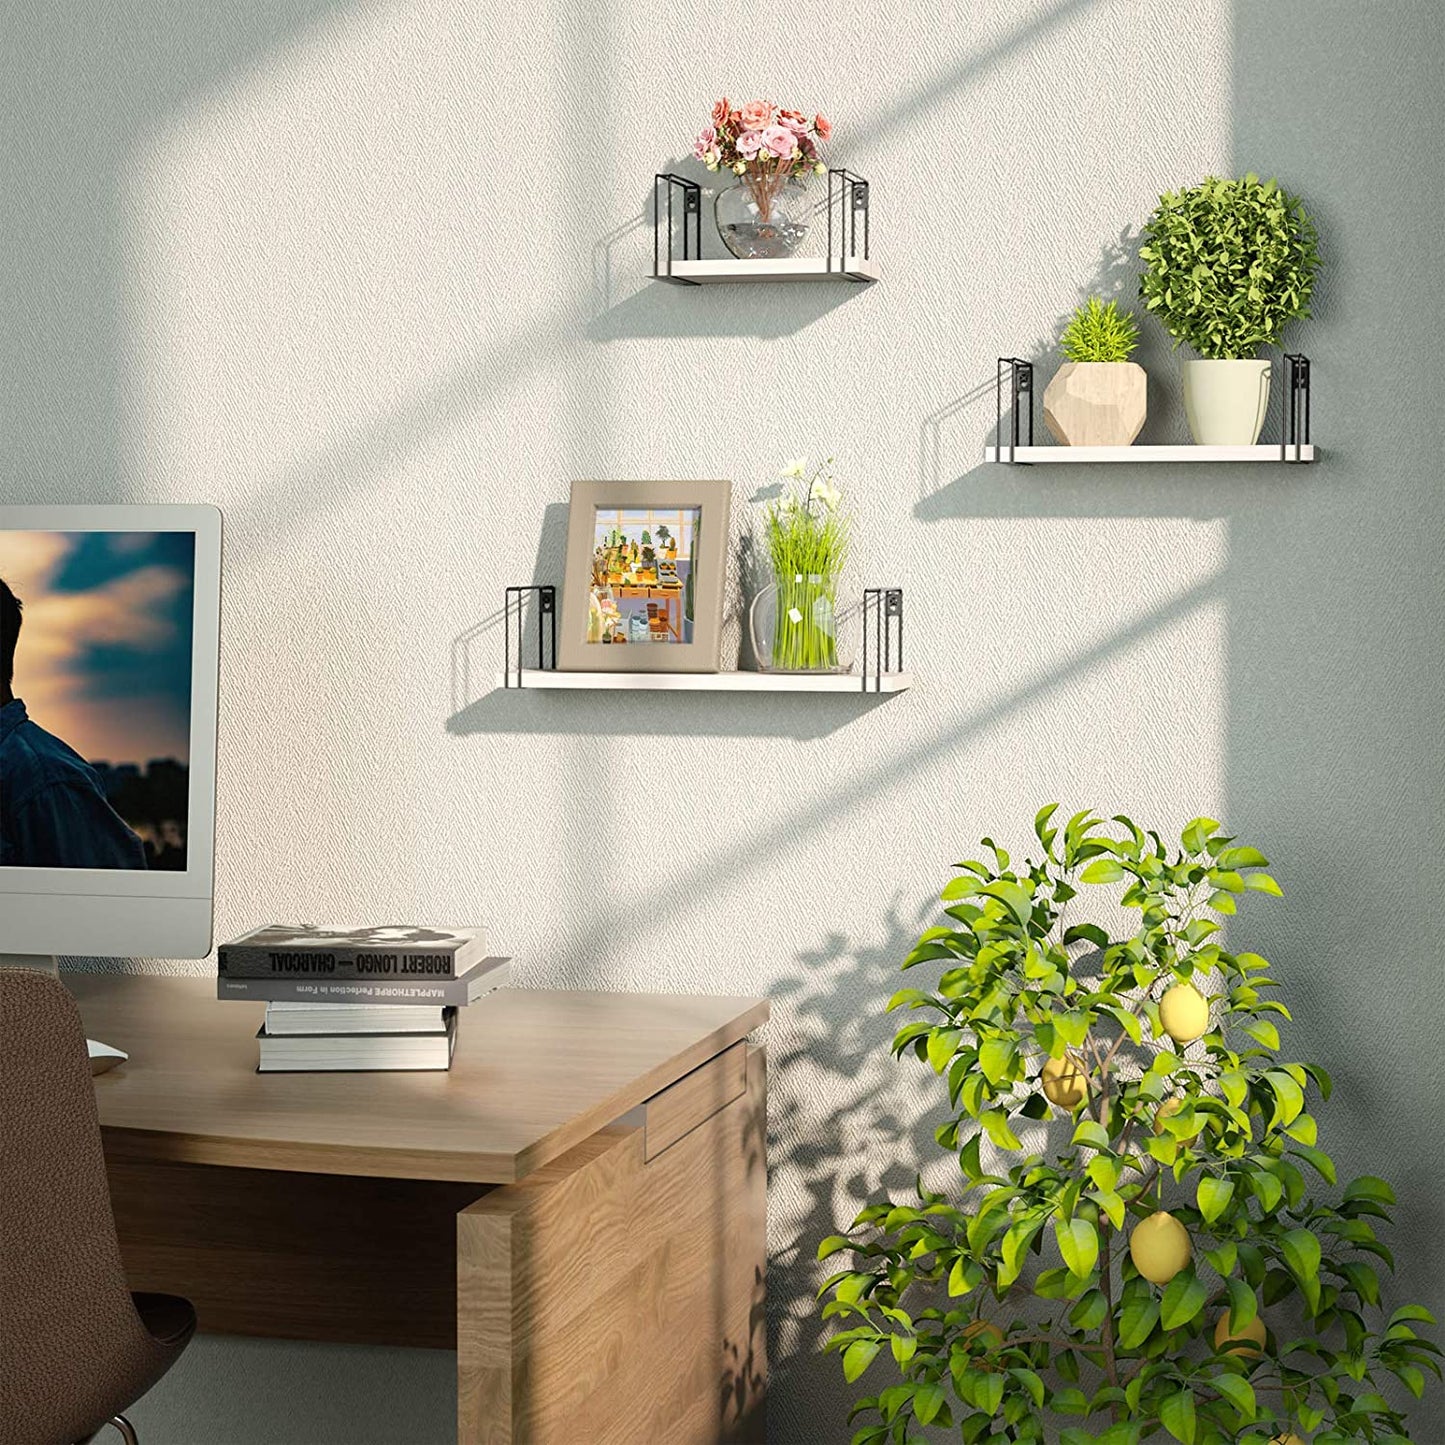 Wall Shelves: Storage Shelves for Bedroom, Living Room, Kitchen, Bathroom, White